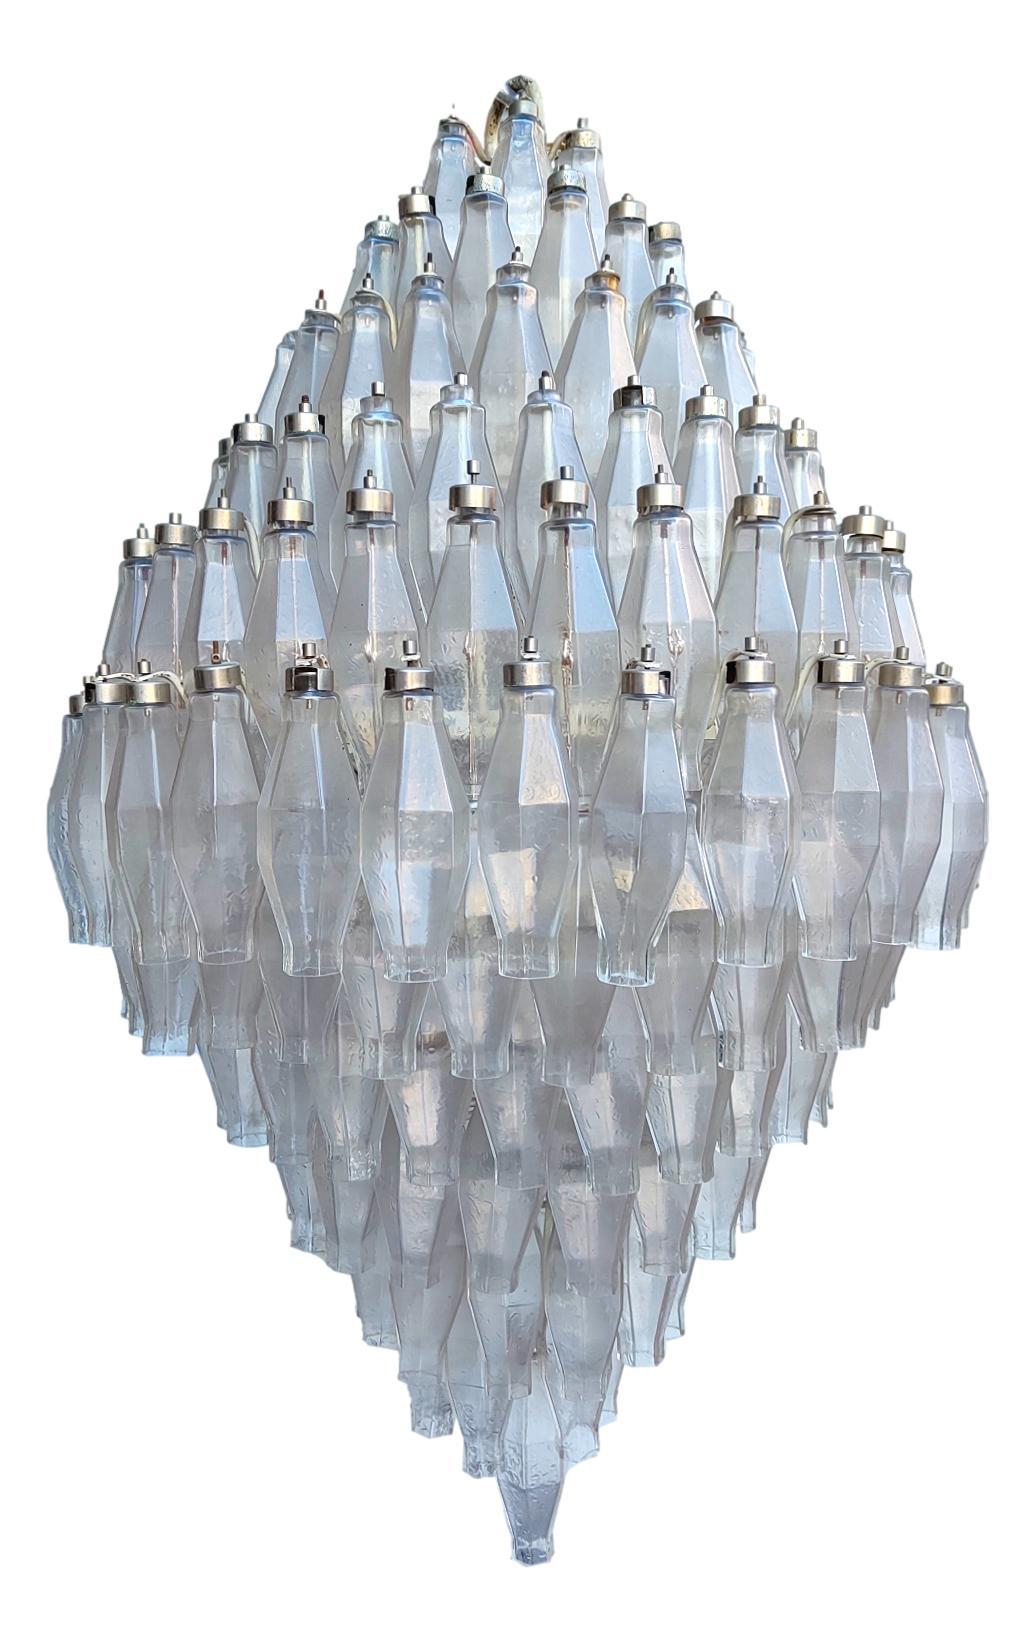 seltener riesiger und majestätischer kronleuchter von venini, design carlo scarpa, hergestellt aus 205 poliedri durchsichtigen gläsern, mit 19 glühbirnenfassungen
Höhe 1 Meter, Durchmesser cm 70.
kein verlorener Poliedri, nur einige Caps, als